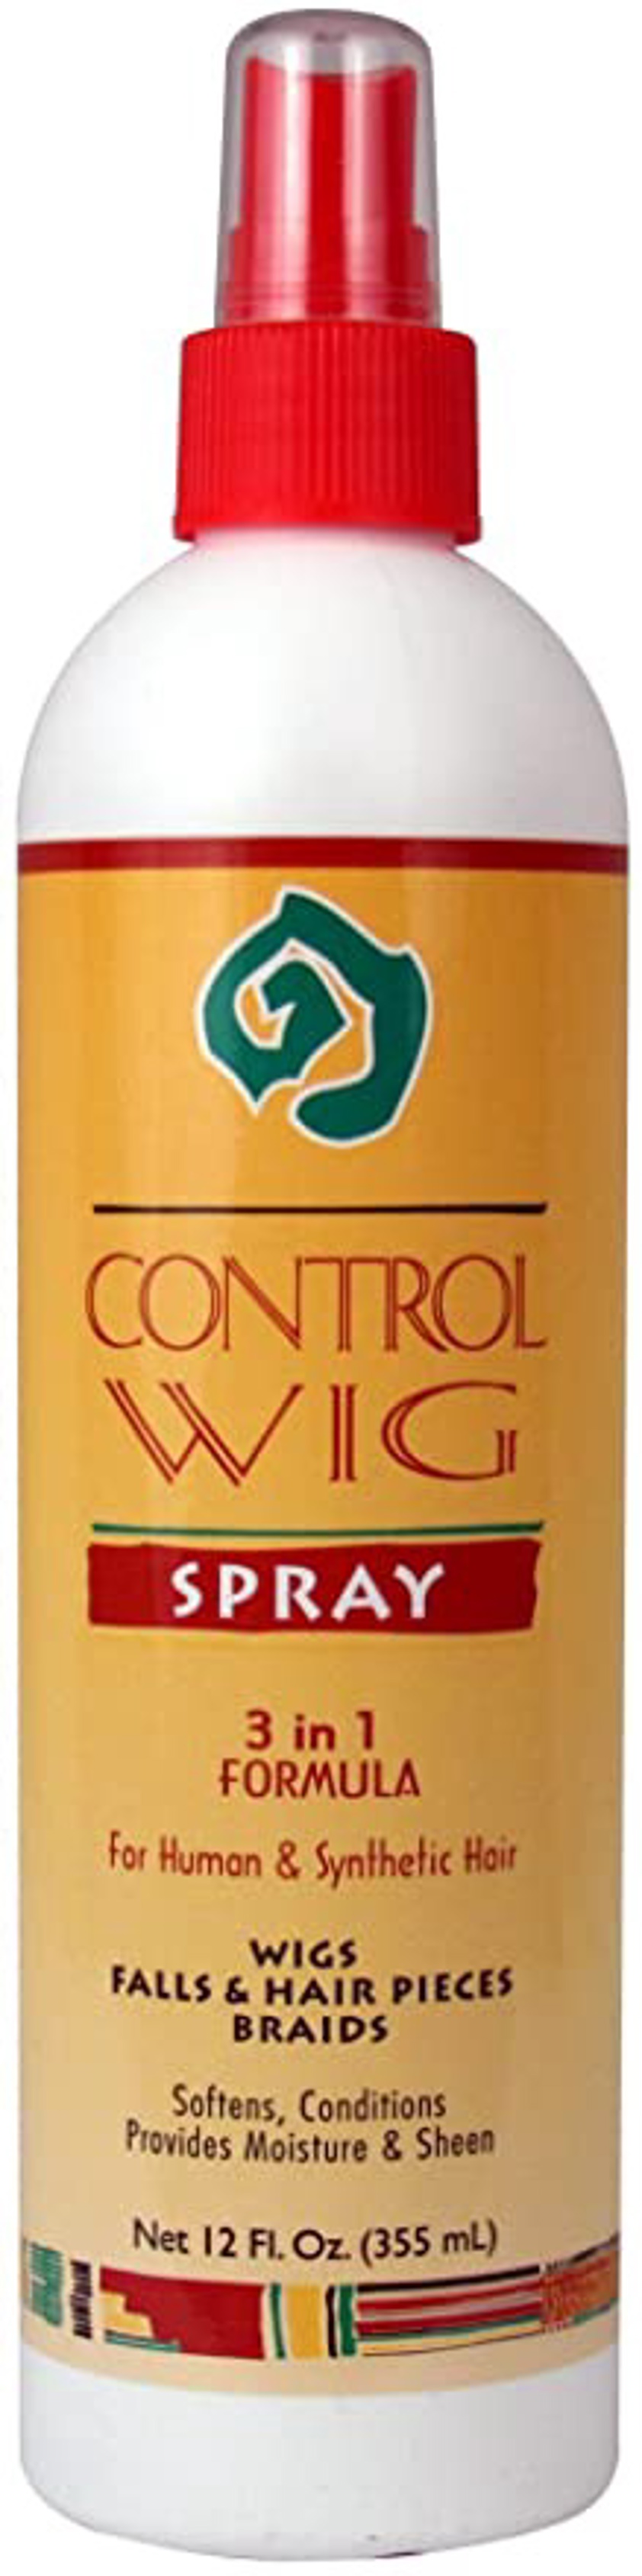 African Essence Control Wig Spray 3 in 1 Formula